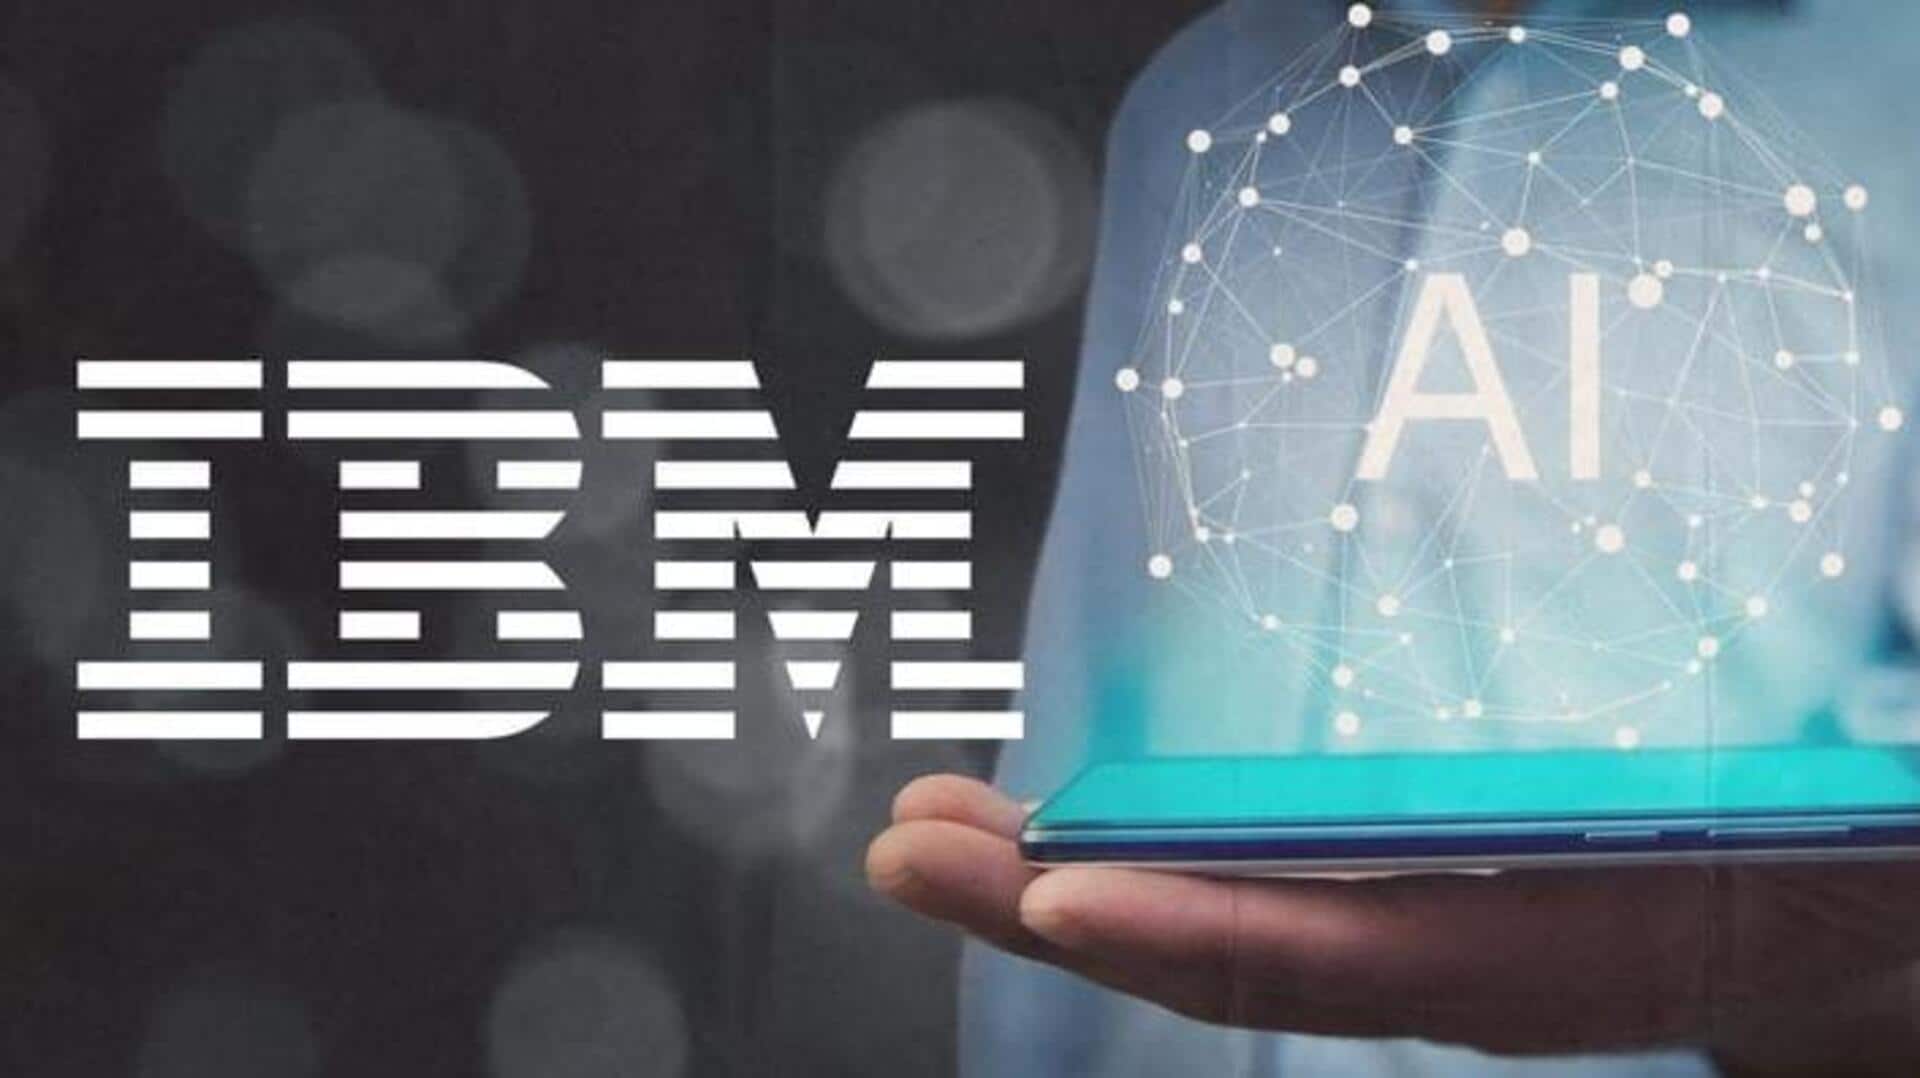 IBM reveals new AI models similar to OpenAI's GPT-4